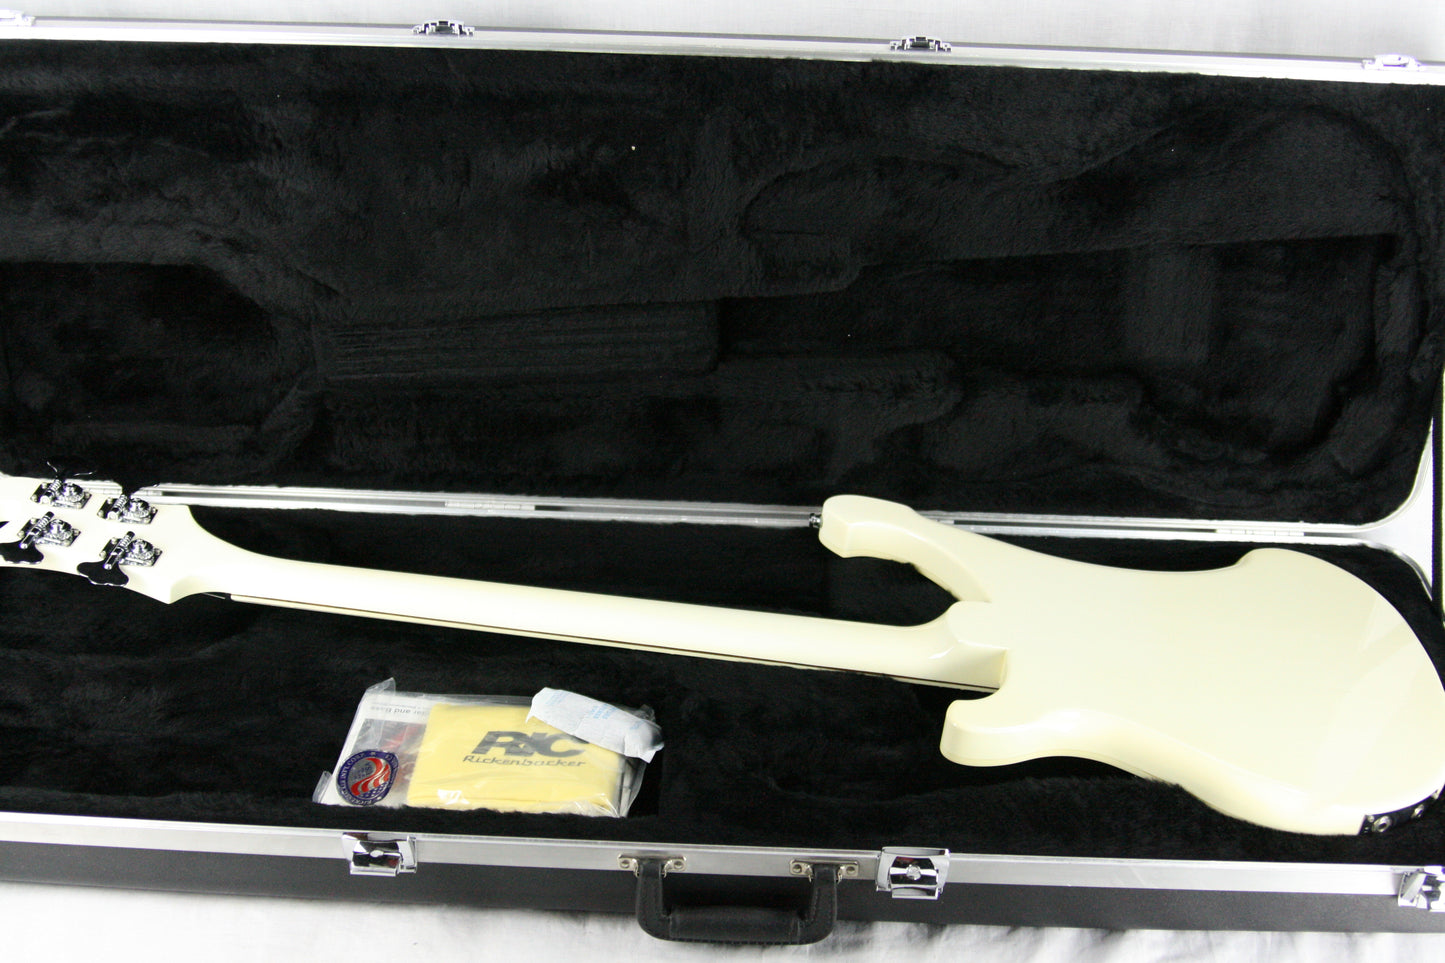 2014 Rickenbacker 4003 Snowglo White! Limited Edition Bass Guitar! Rare Color